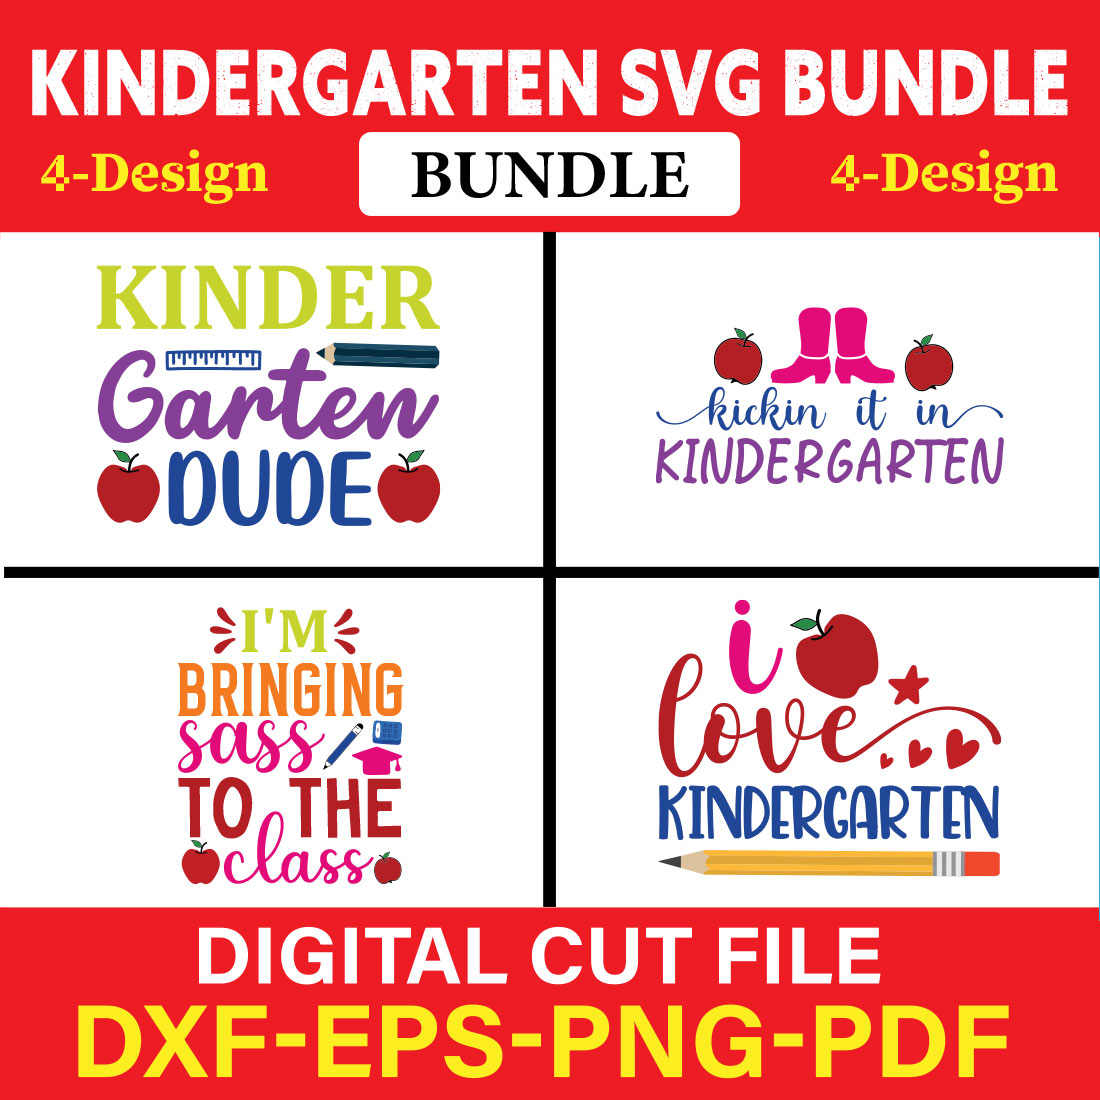 Kindergarten T-shirt Design Bundle Vol-7 cover image.